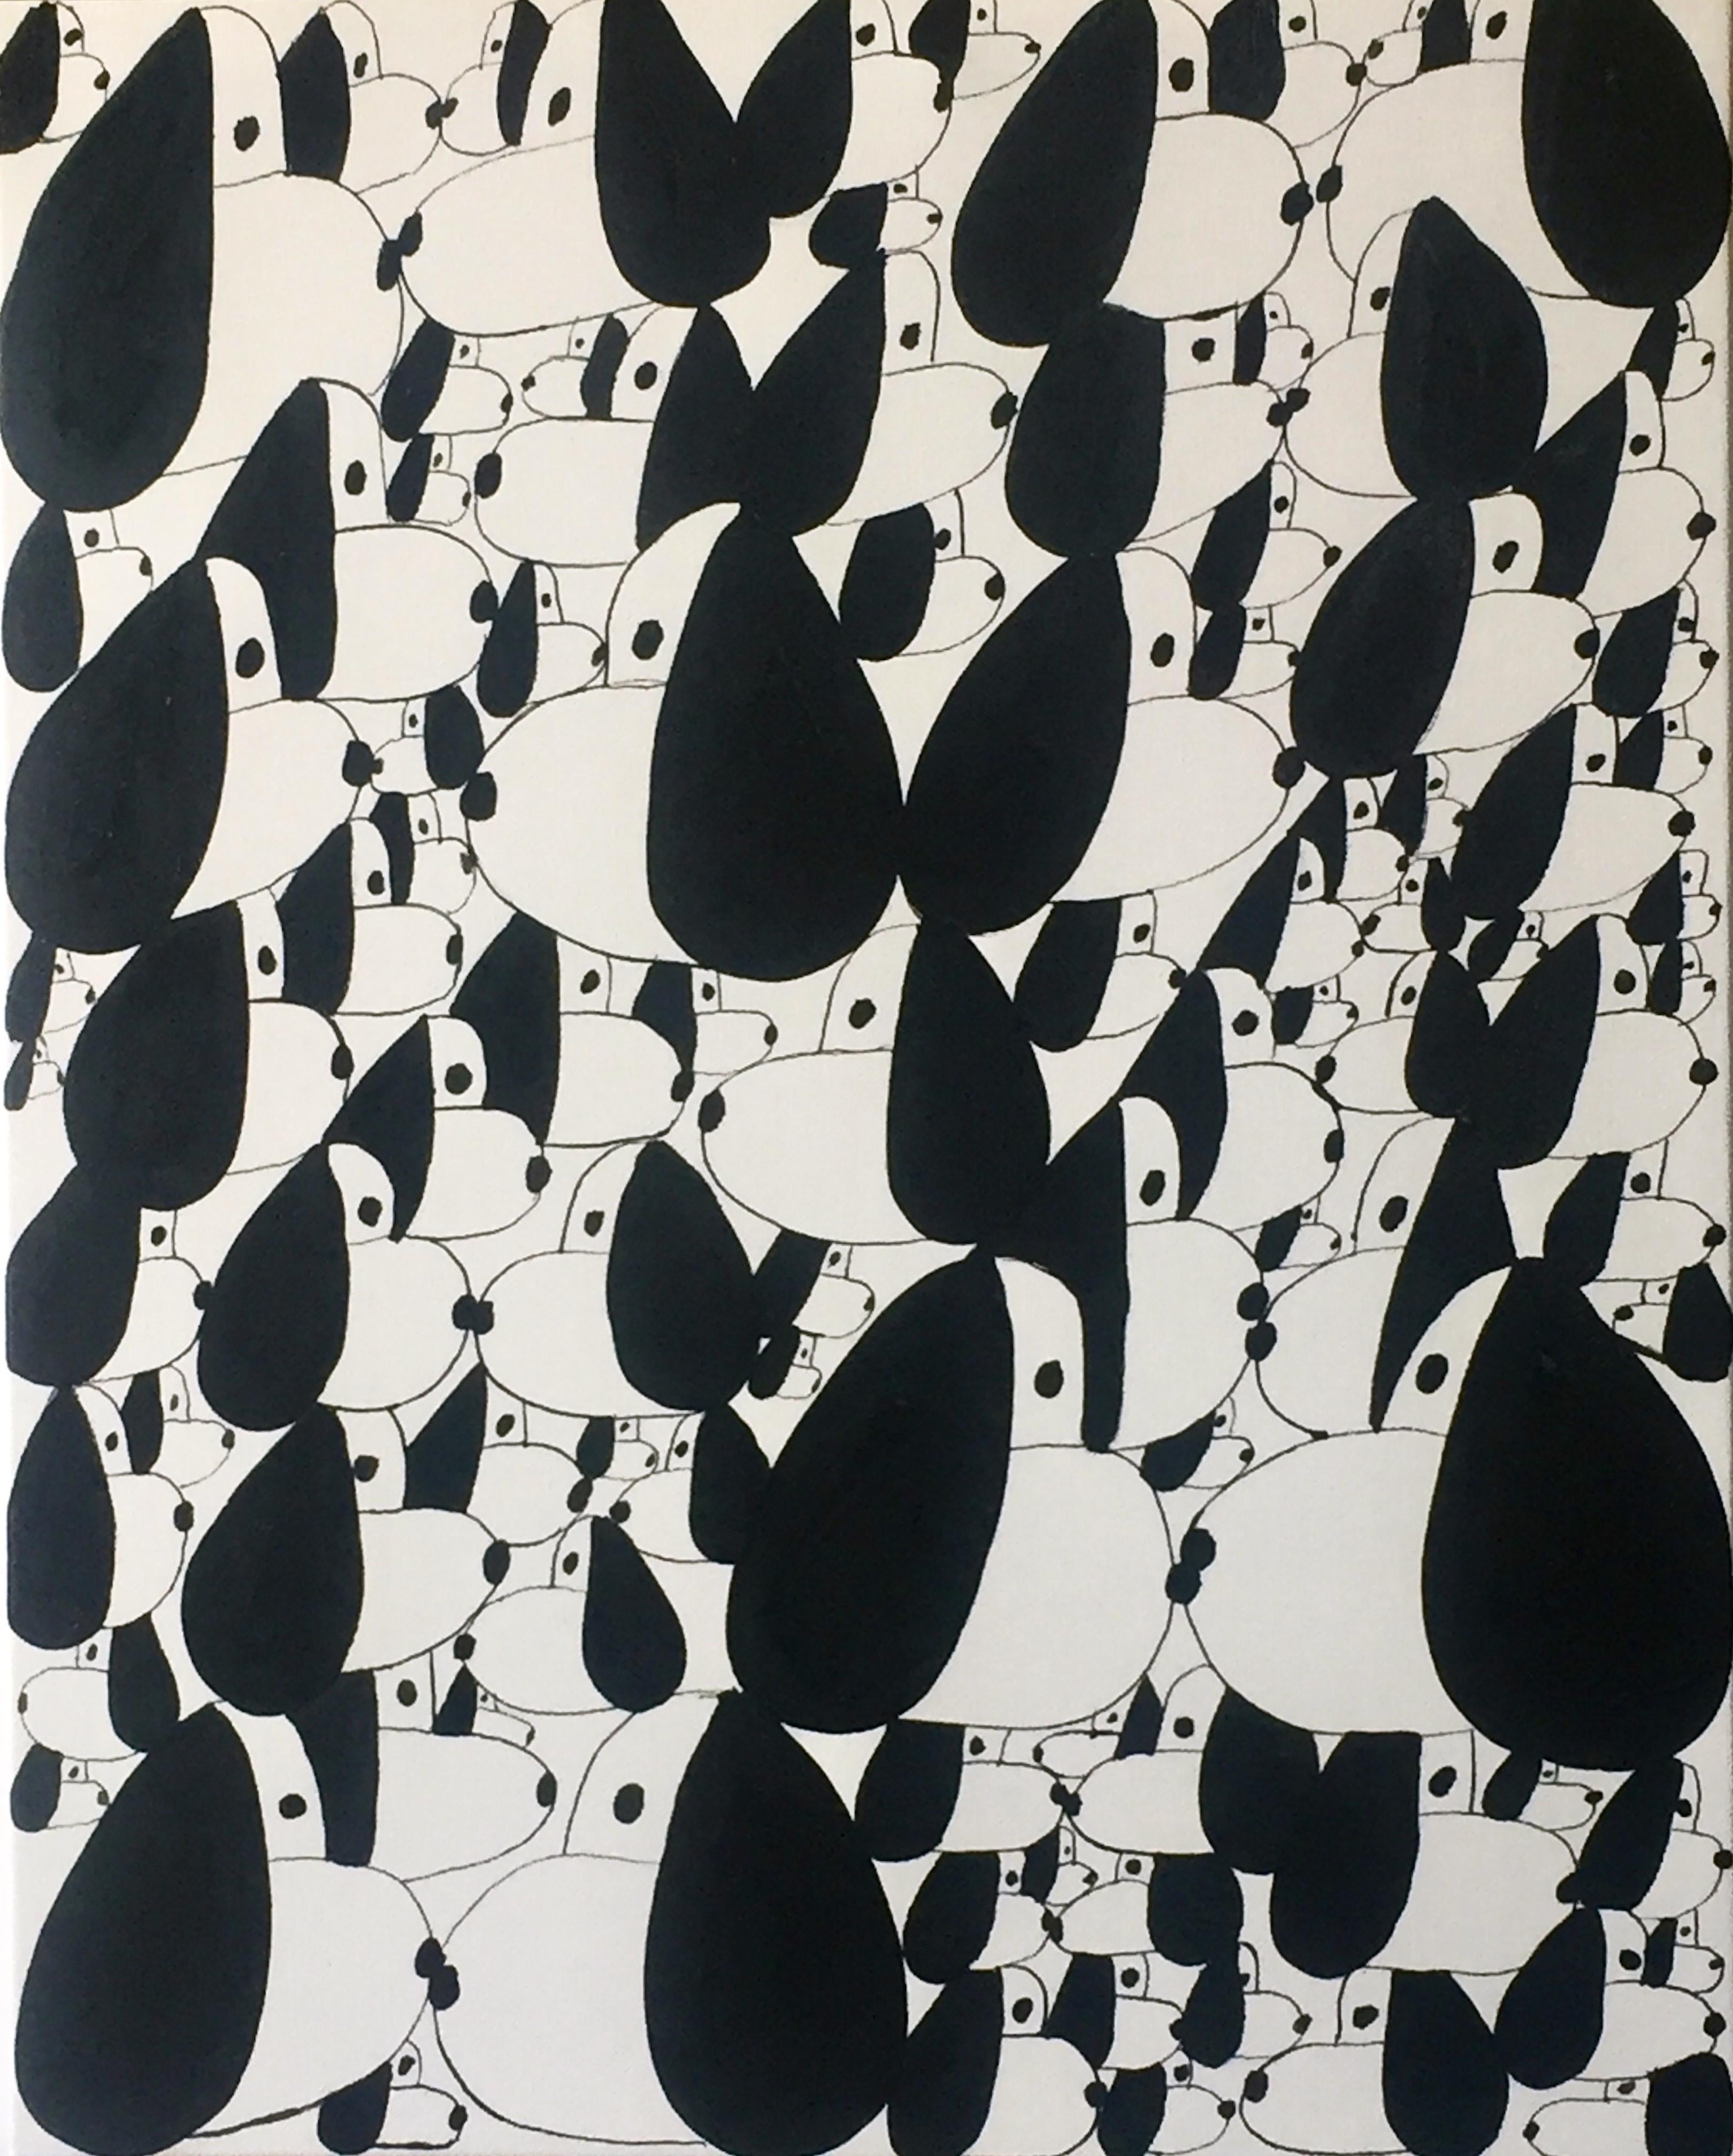 Peinture sur toile noire et blanche "Snoopies in a Crowd" 16x20 inches